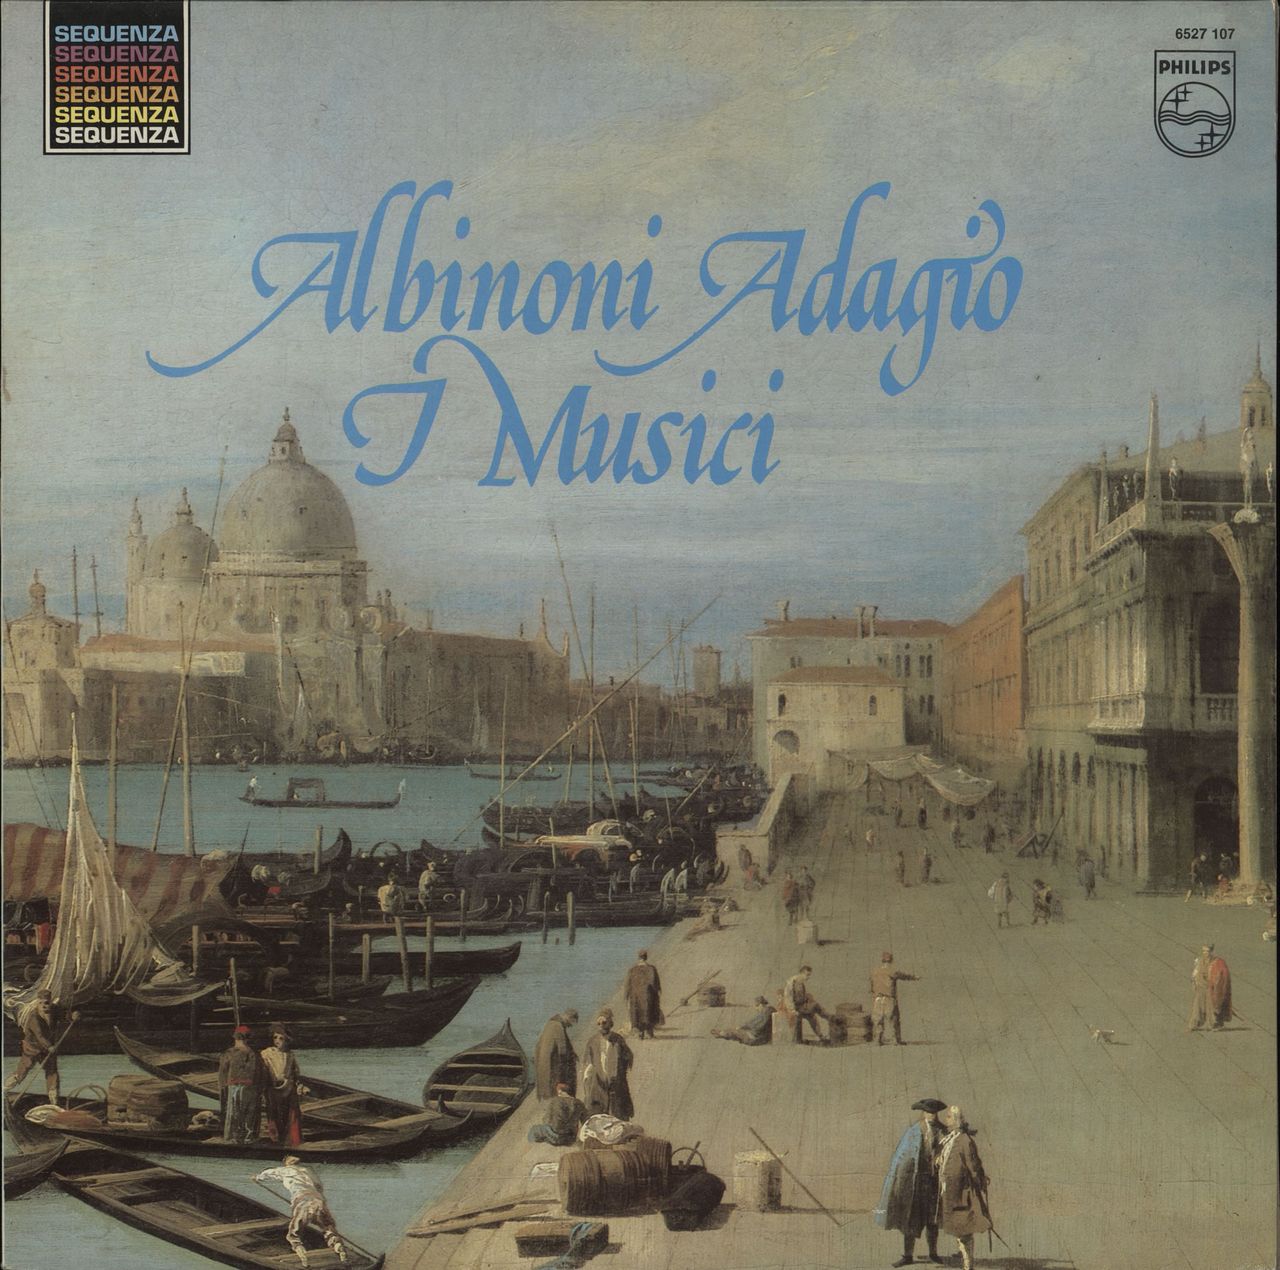 I Musici Albinoni: Adagio UK vinyl LP album (LP record) 6527107